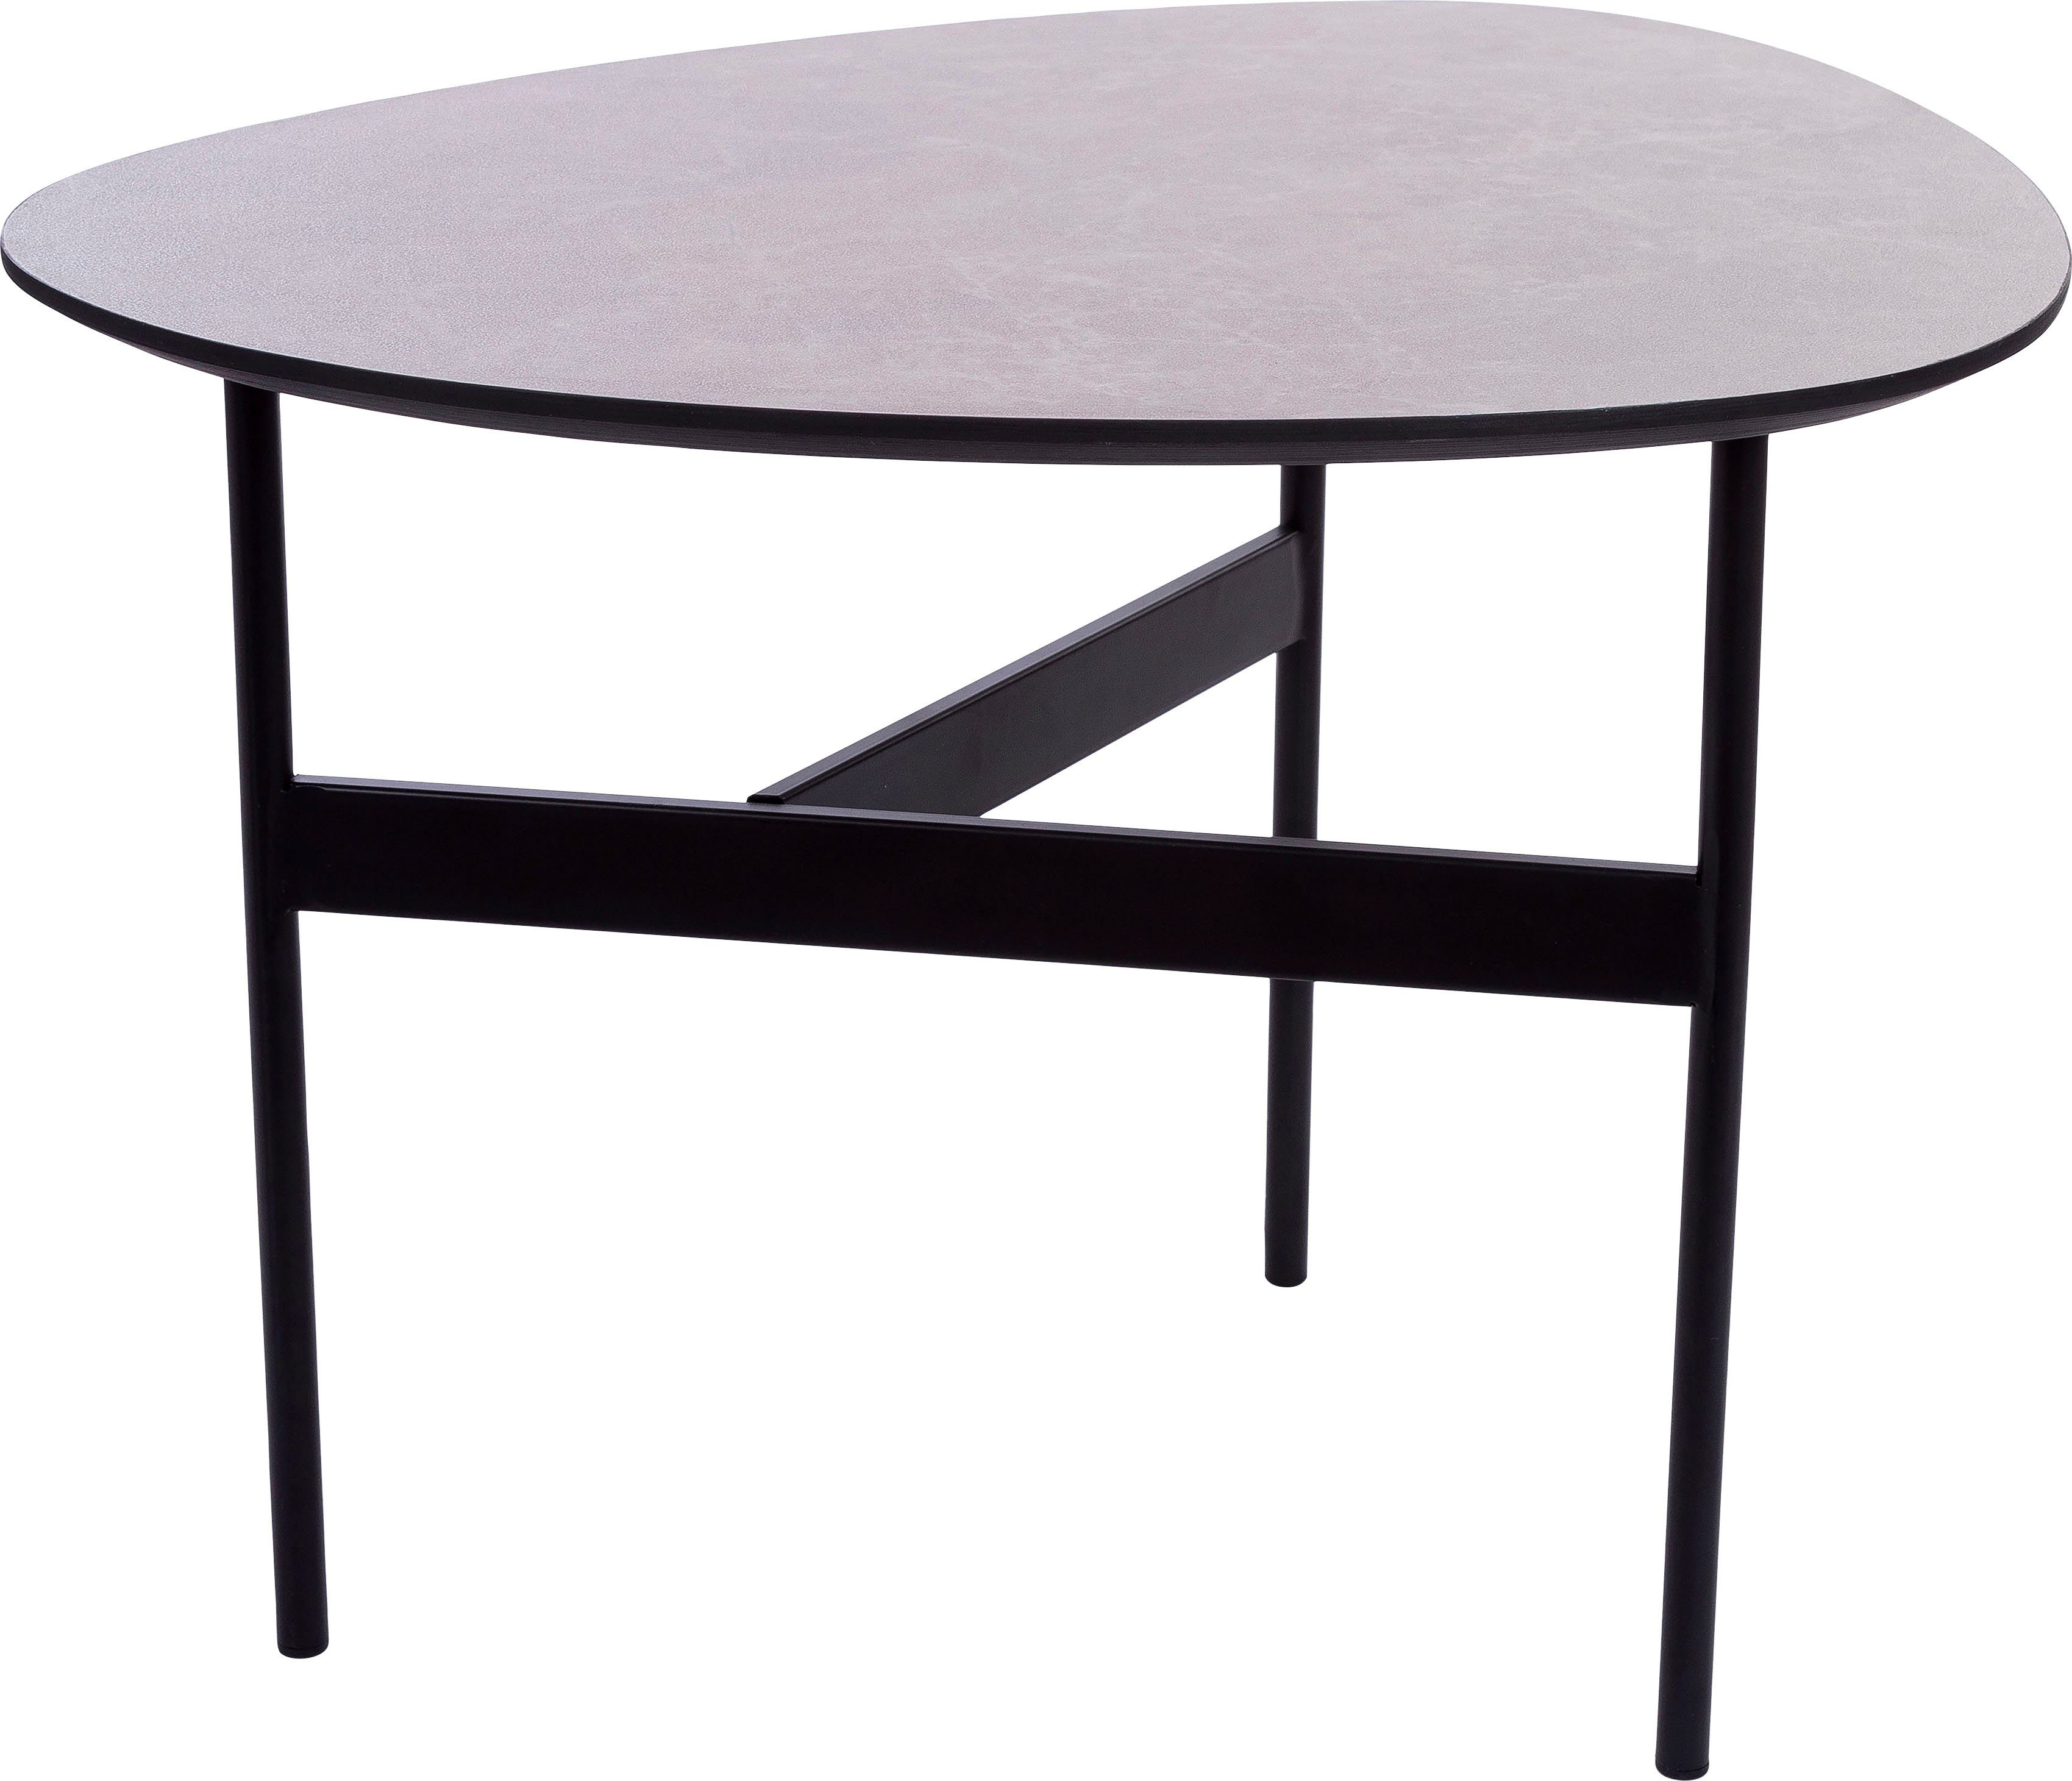 Home affaire Beistelltisch, Beistelltisch Bein Gestell lackierter grau Tischplatte, 3 Oval